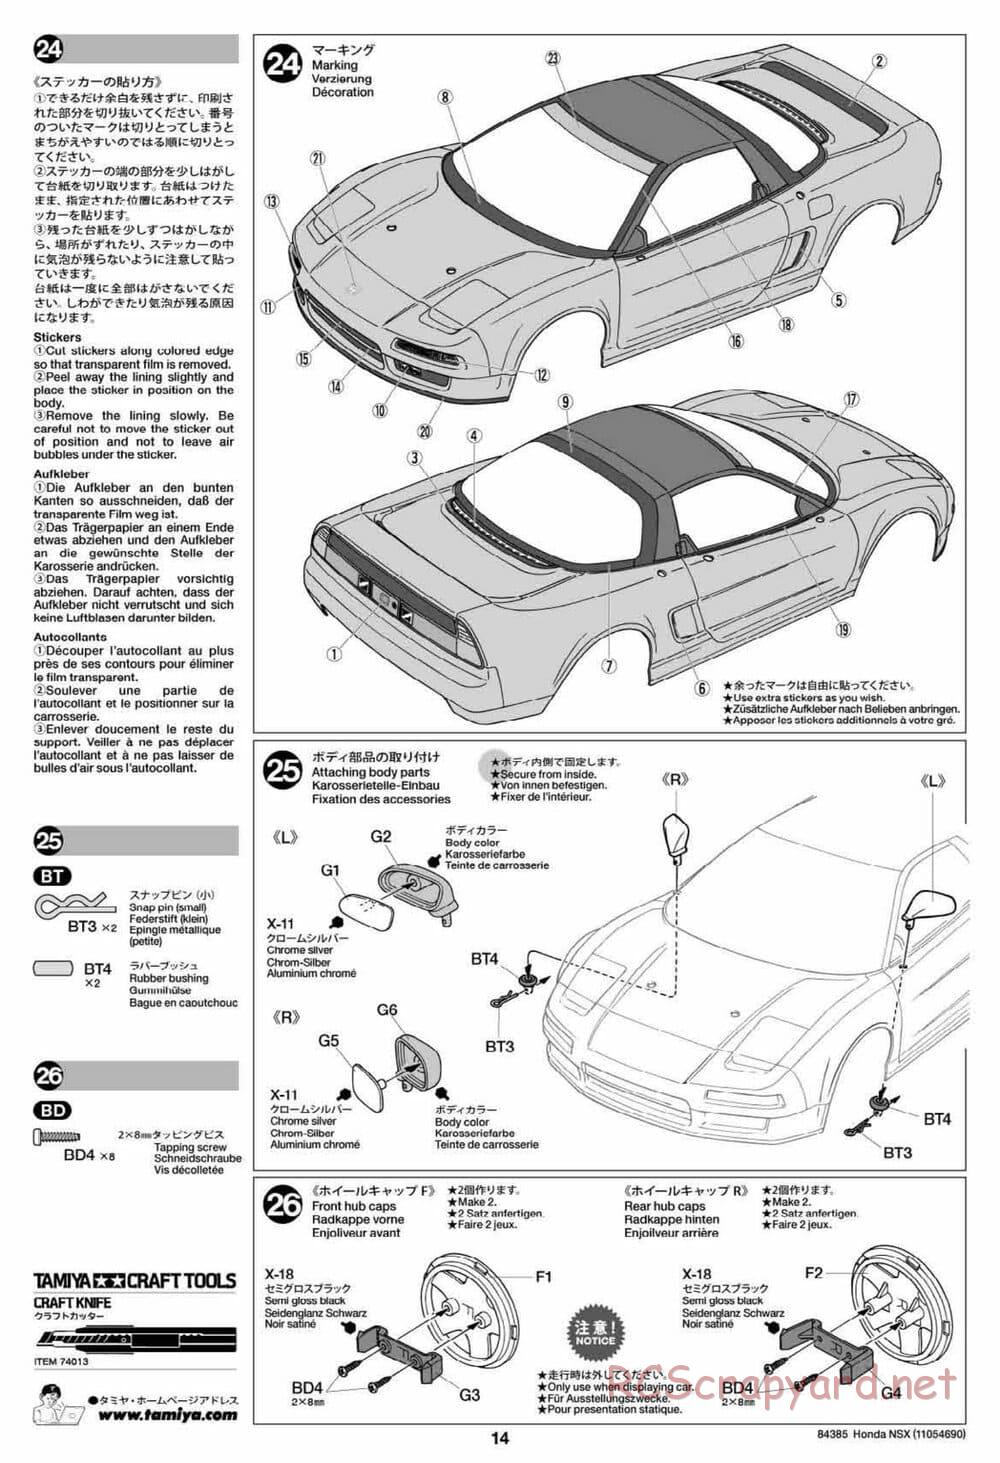 Tamiya - Honda NSX - Group-C Chassis - Manual - Page 14